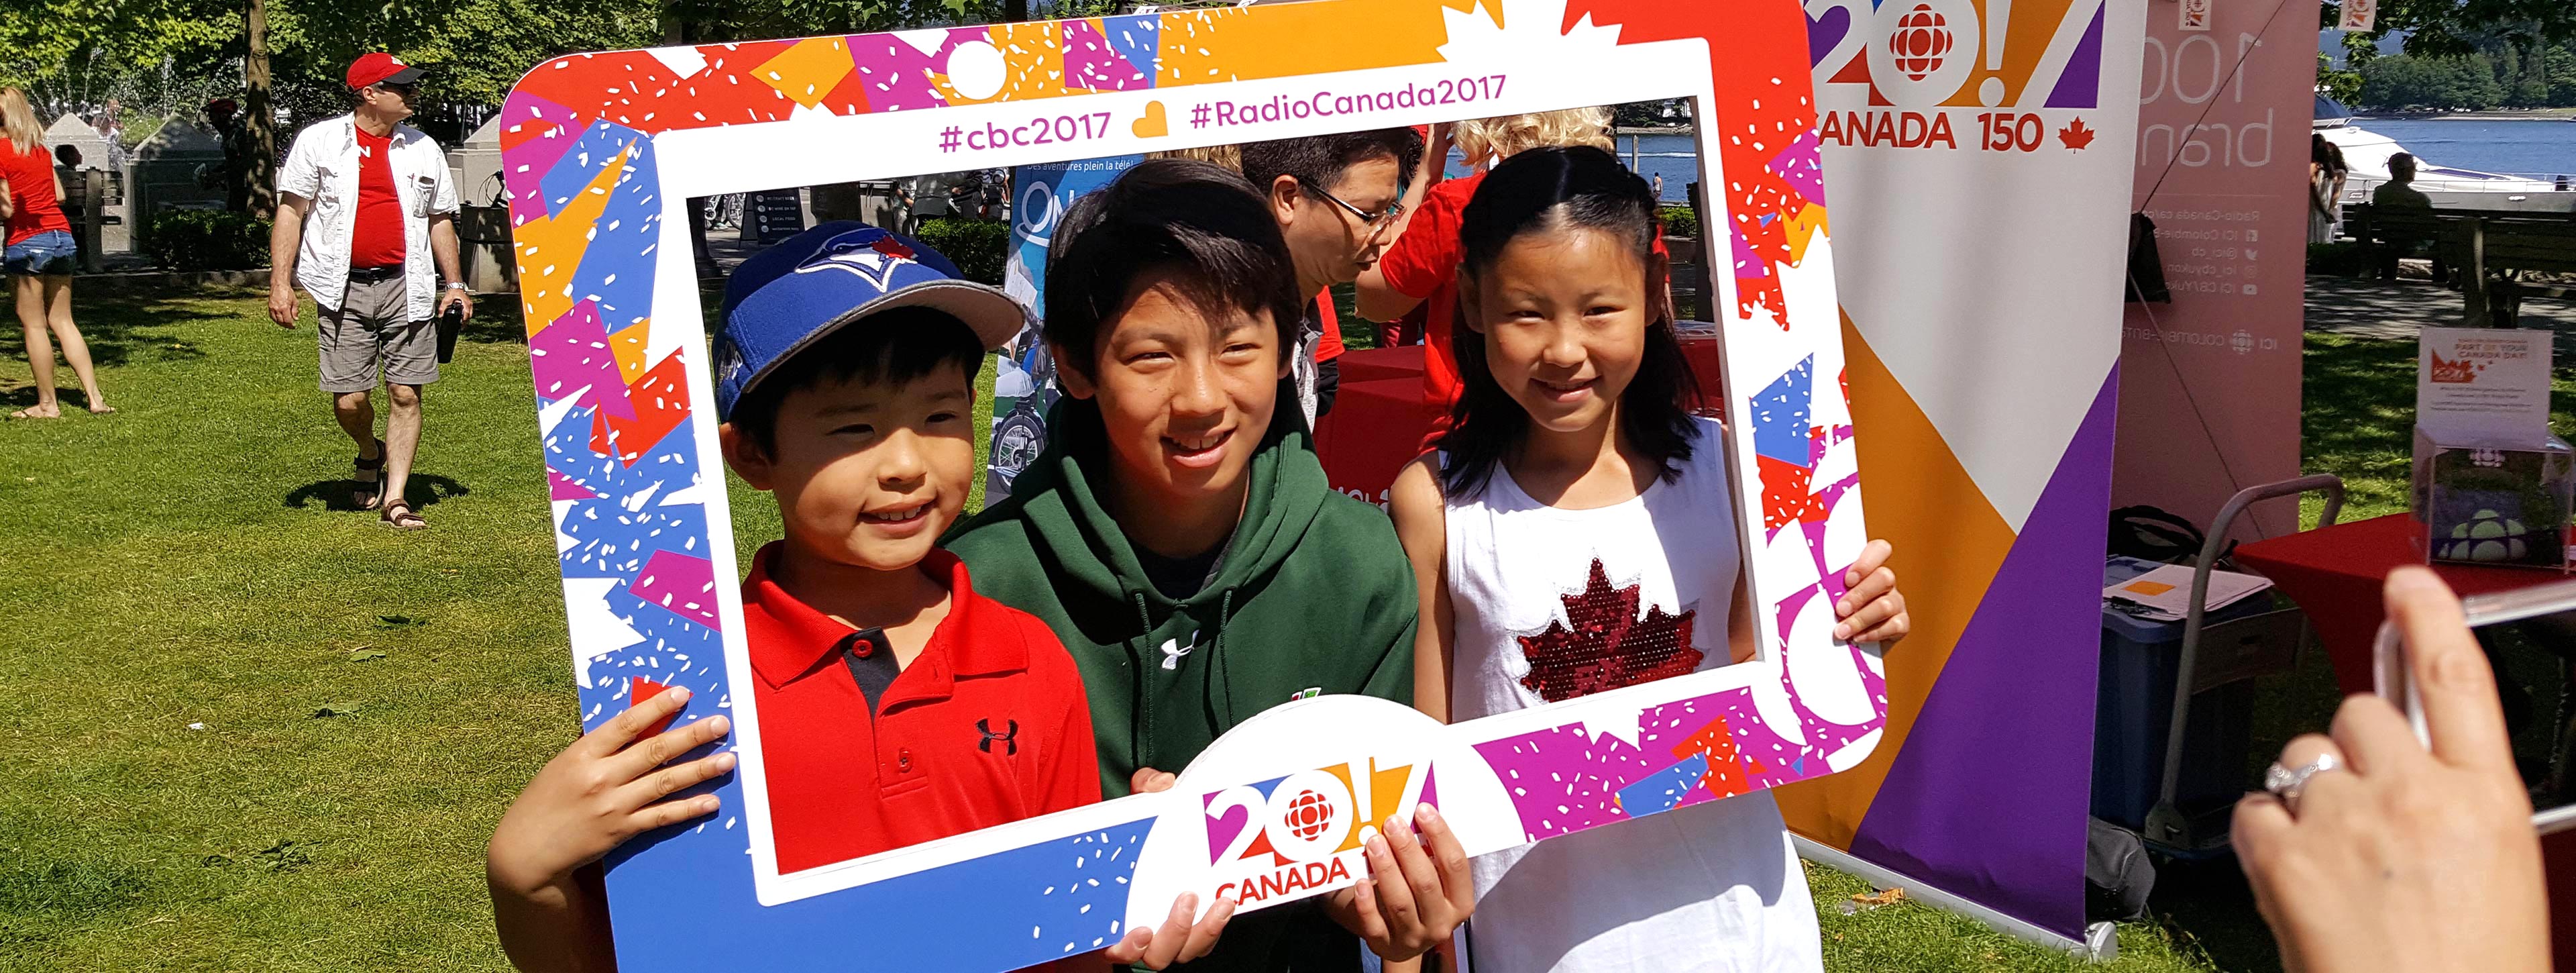 Des enfants photographiés derrière un cadre Canada 150.